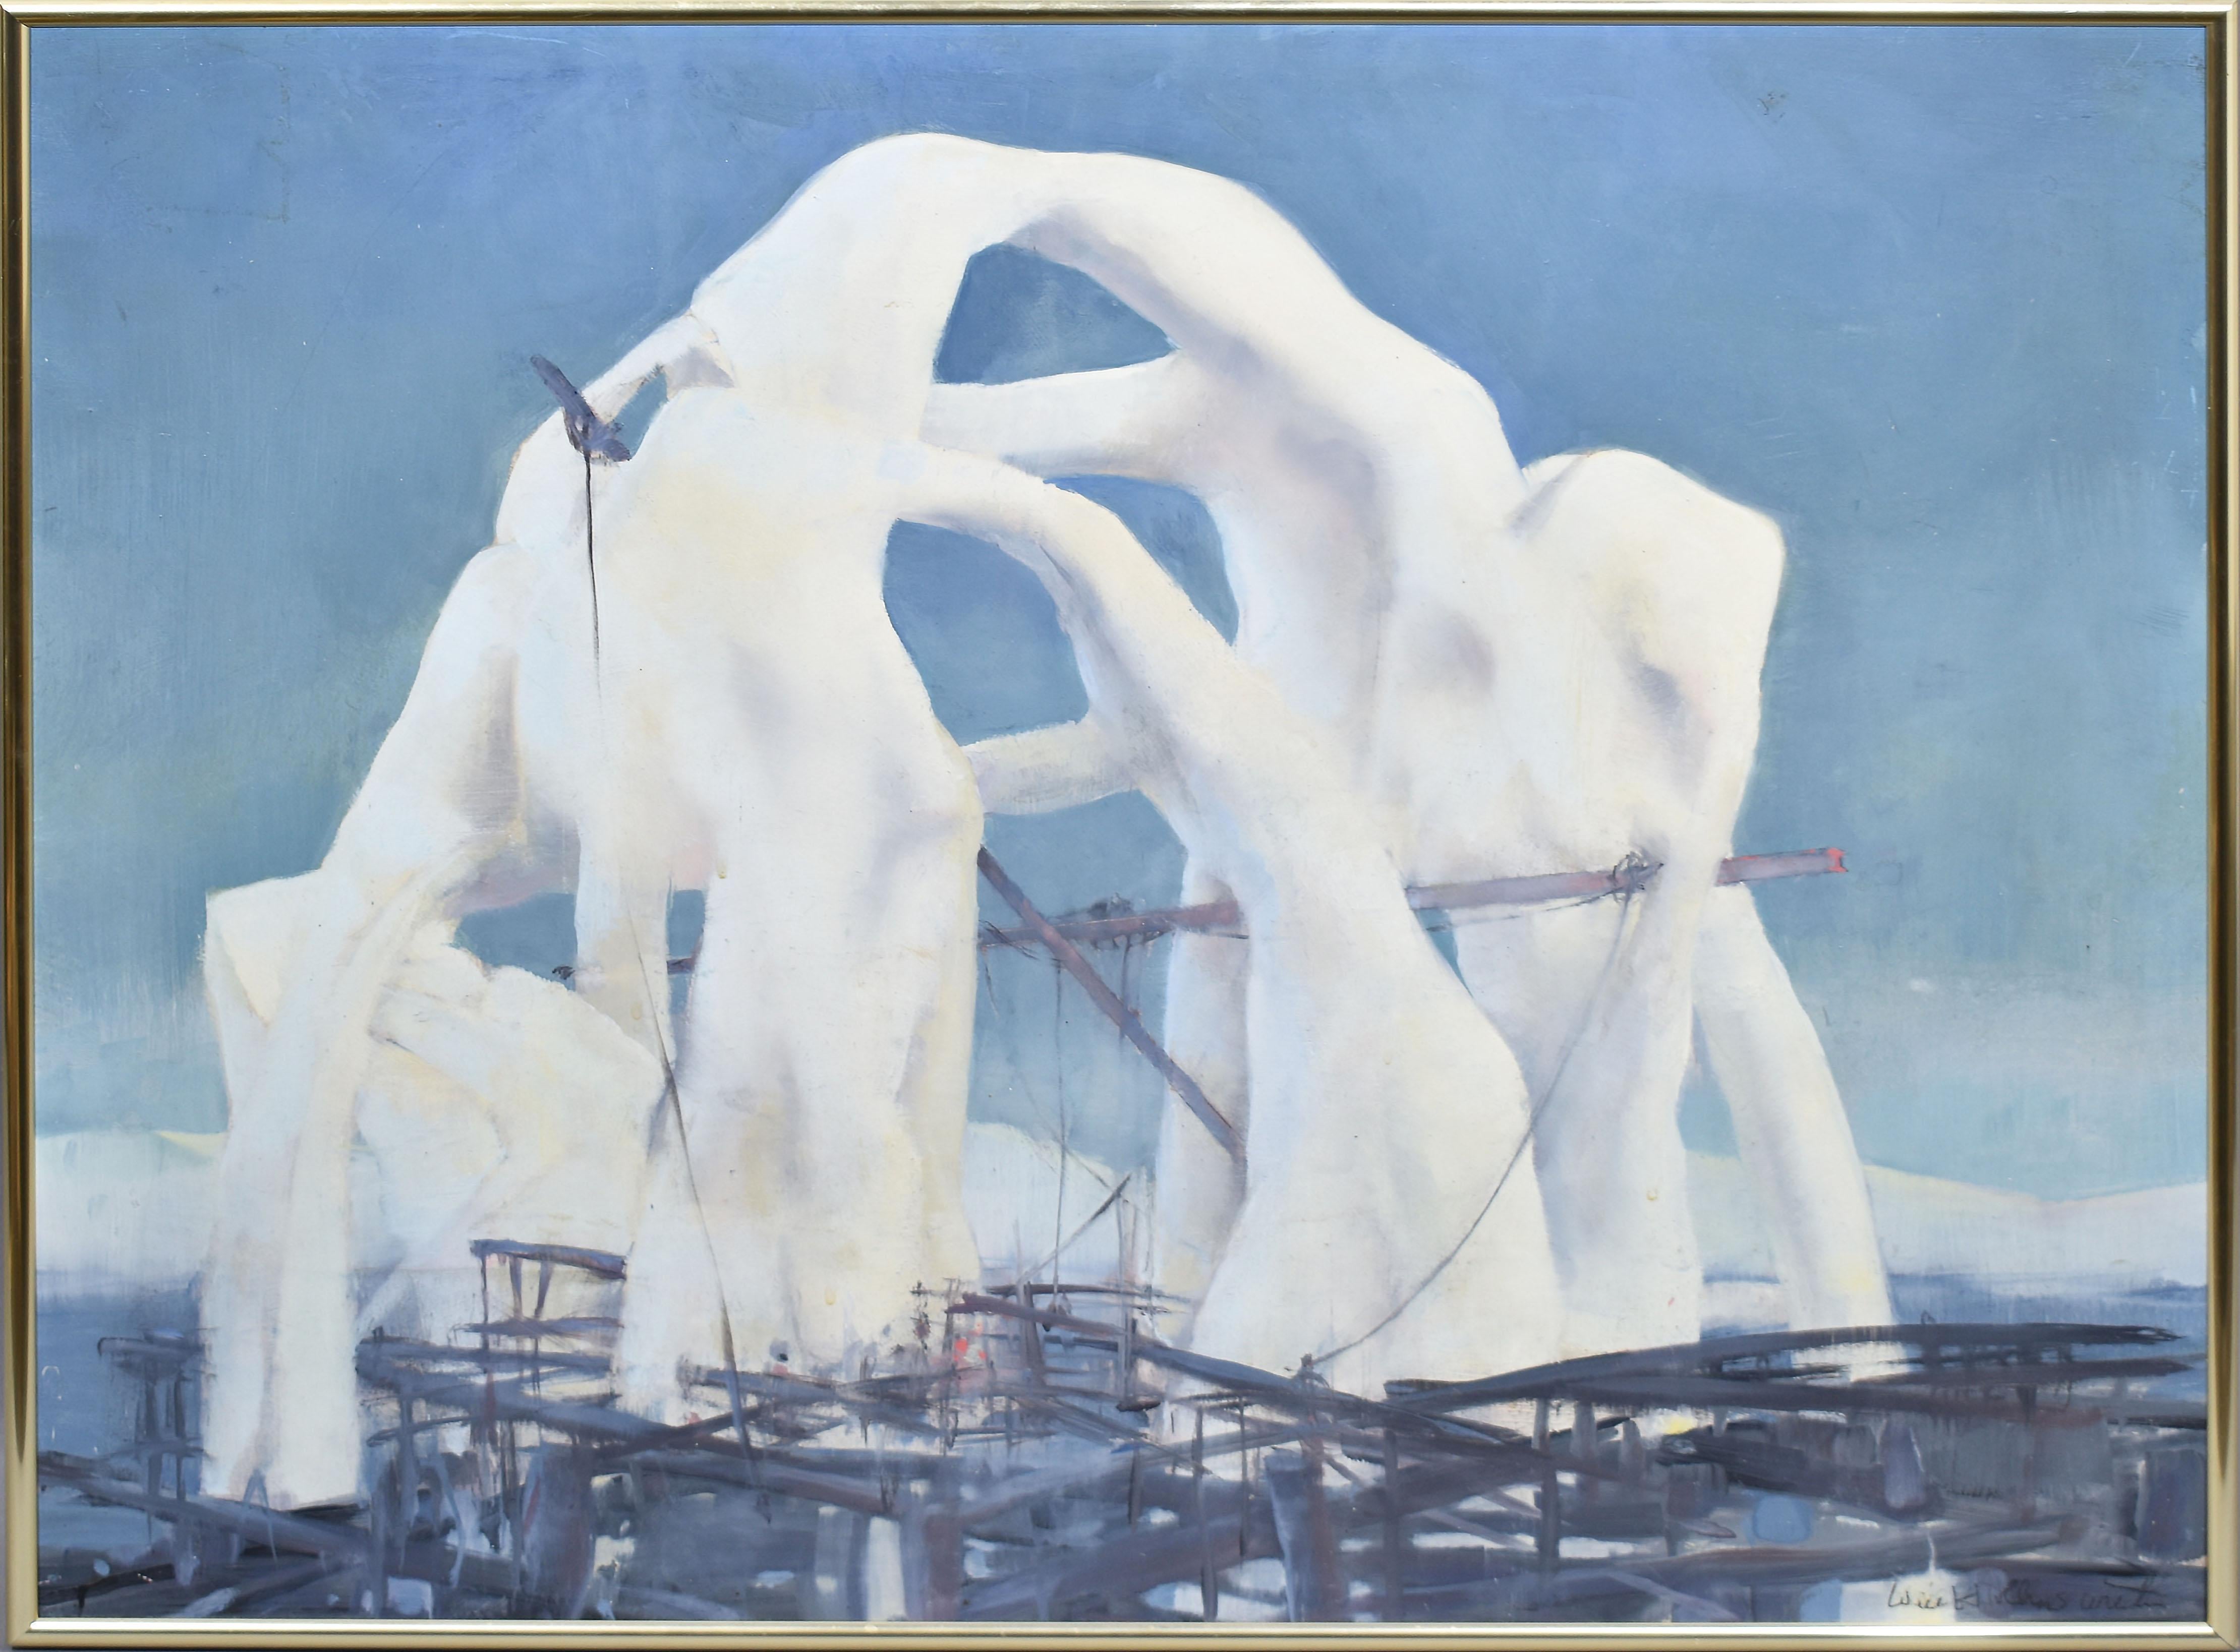 Antique peinture américaine surréaliste abstraite de paysage Will Hollingsworth. Huile sur toile, vers 1940. Signé. Présenté dans un cadre moderniste d'époque. Taille de l'image, 24 "L x 20 "H.
